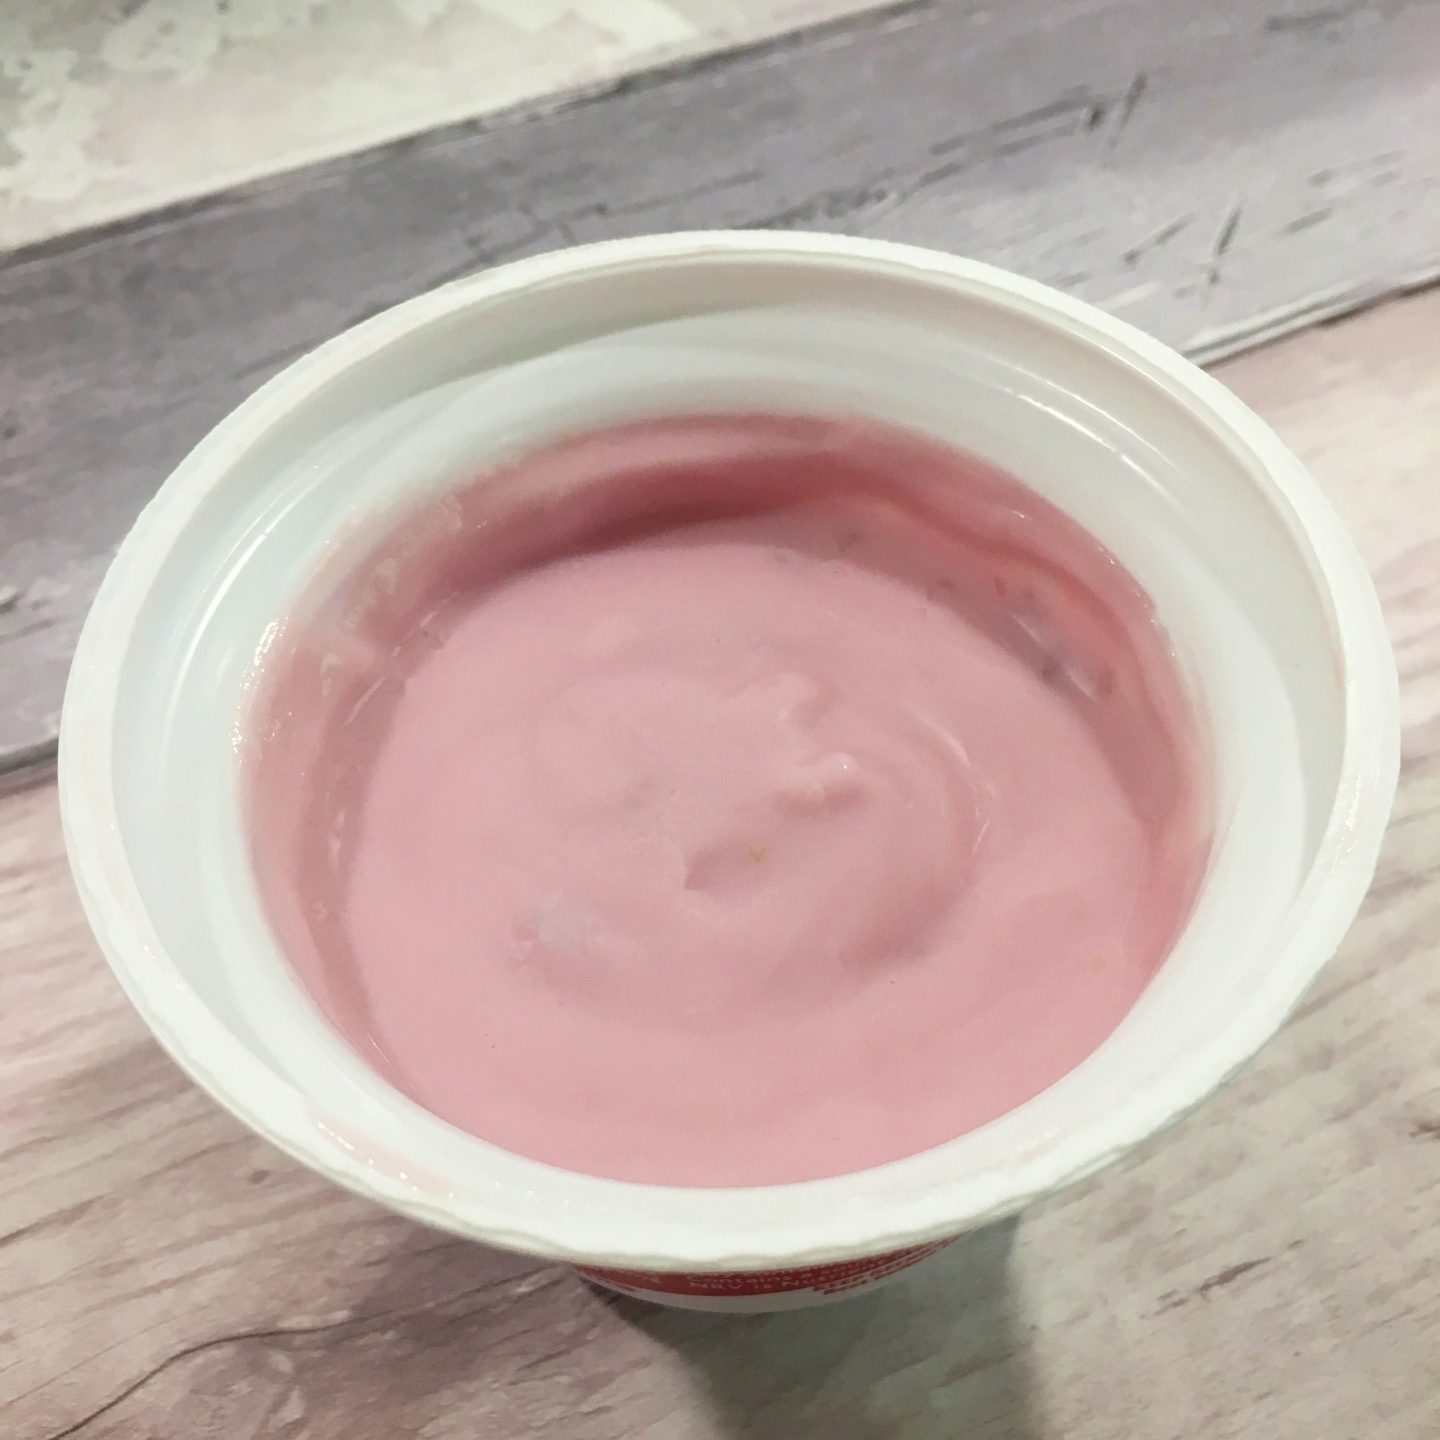 Cherry Bakewell Muller Light Yoghurt